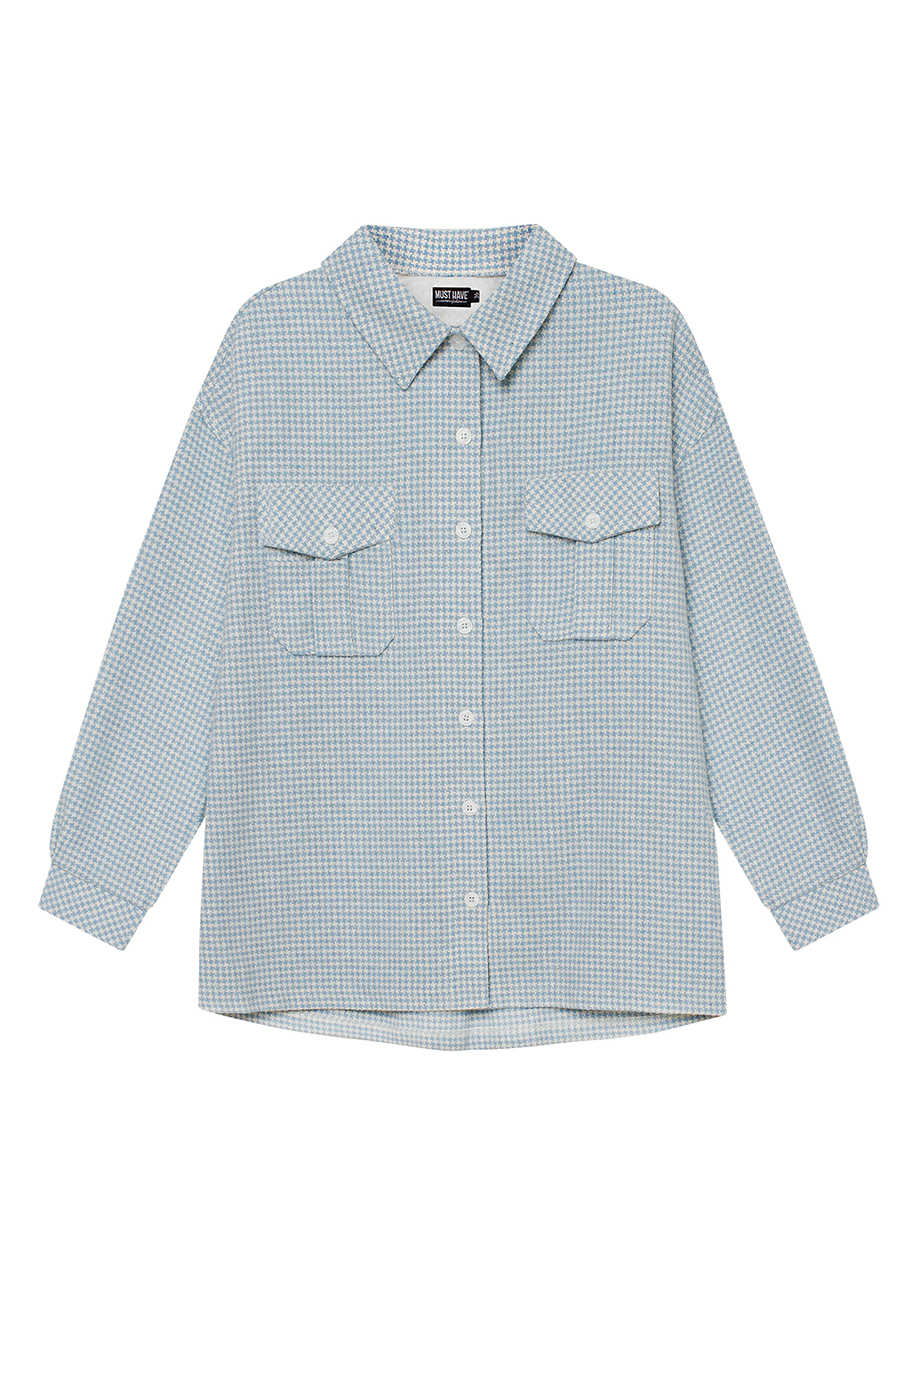 Blue-white plaid flannel top shirt, photo 7